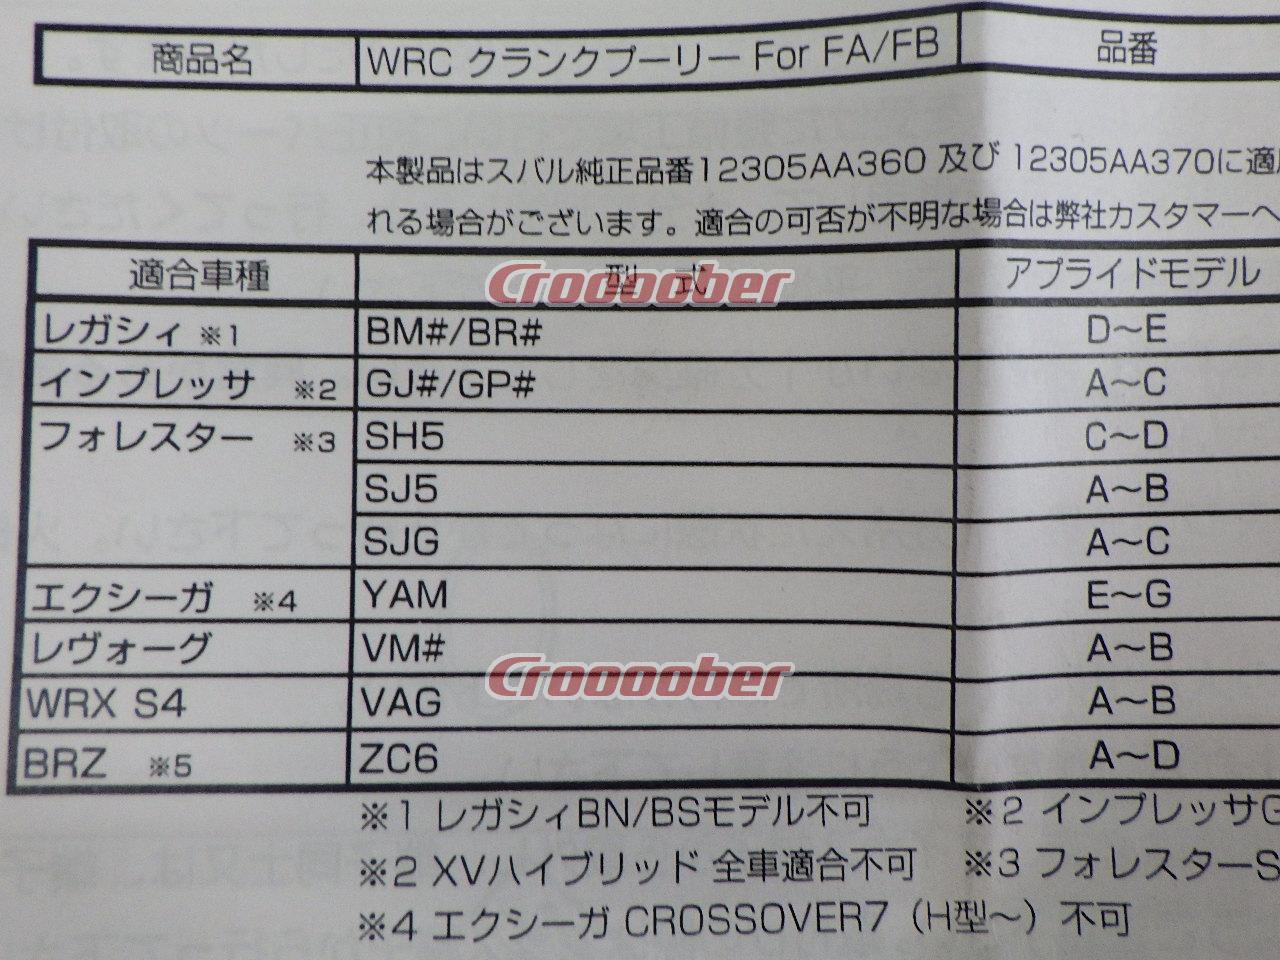 ZERO/SPORTS WRCクランクプーリー ブルーモデル 品番1137015 未使用